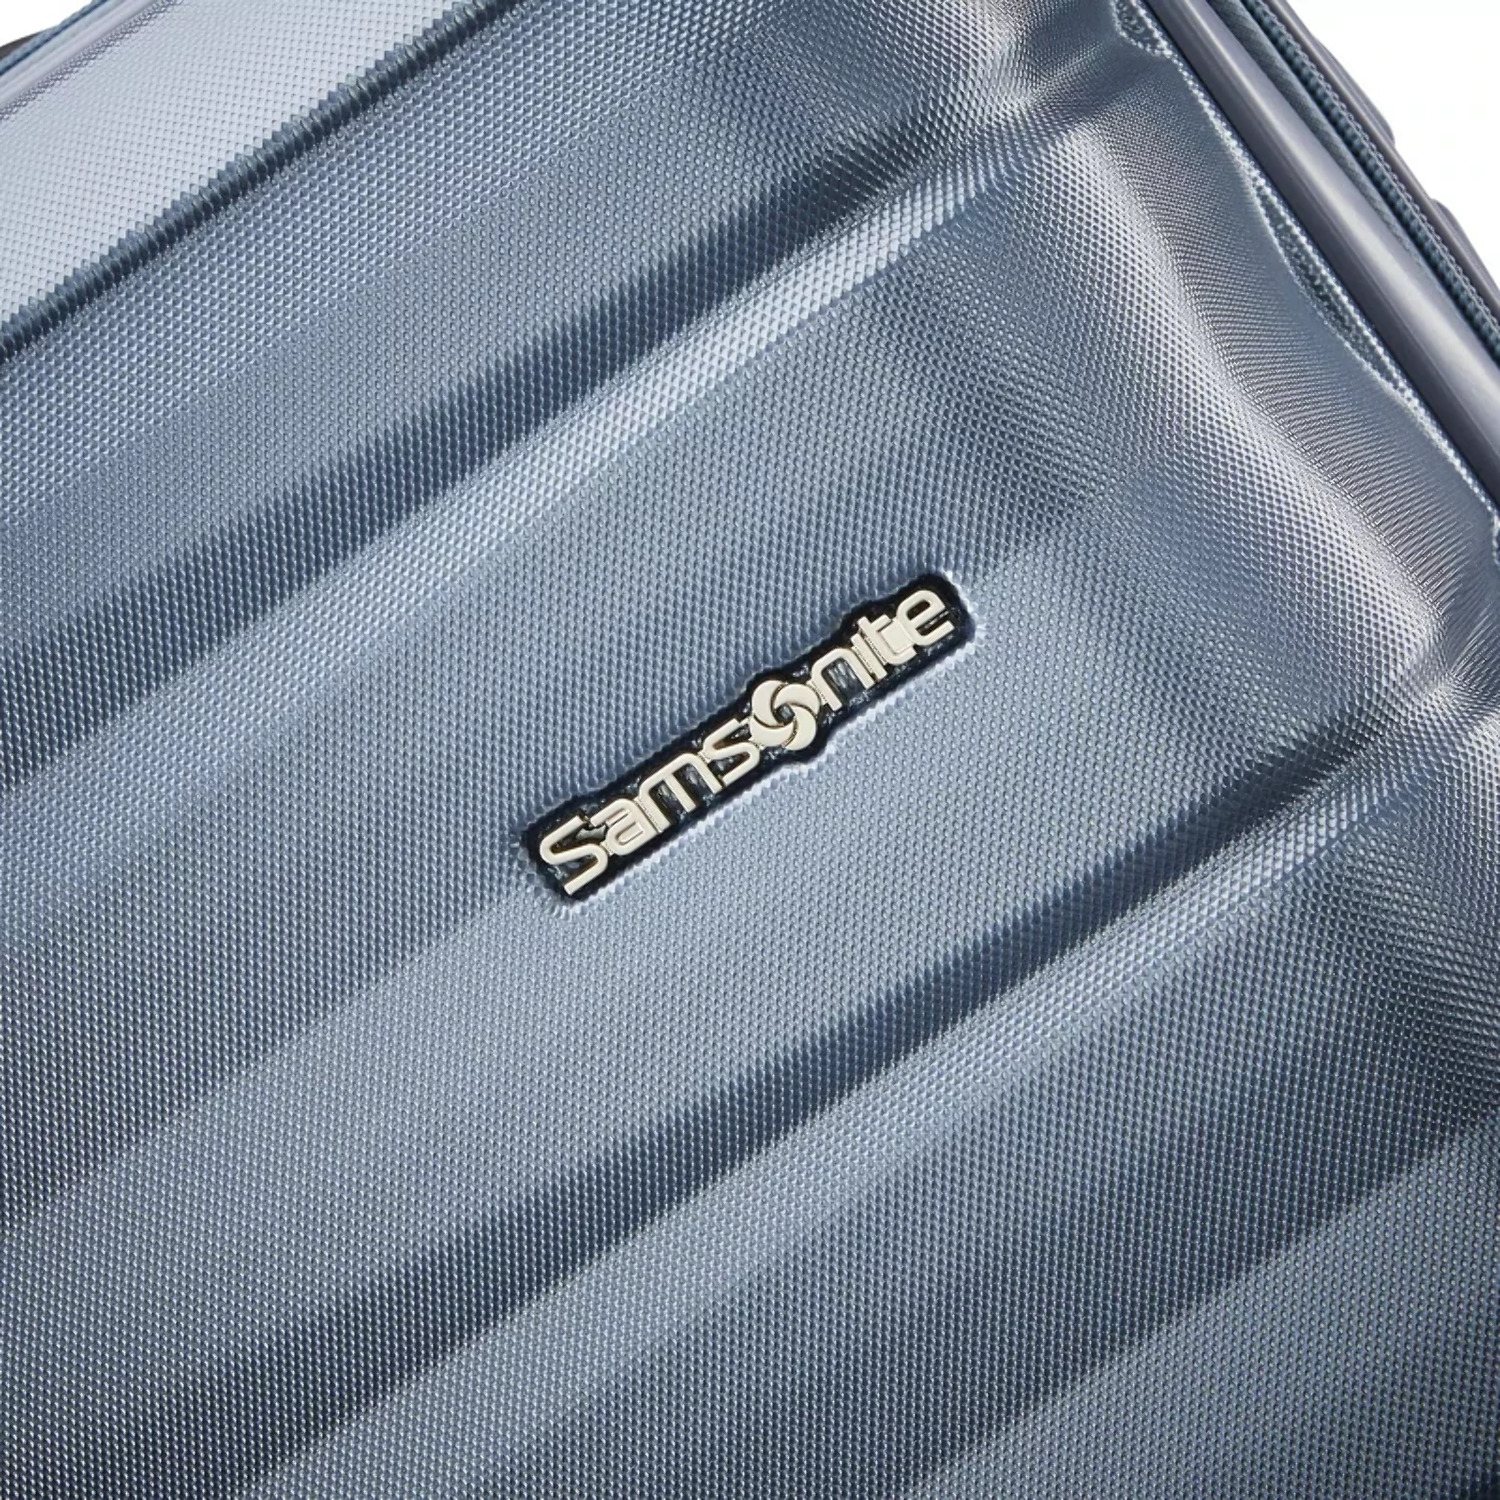 Samsonite Kingsbury Hardside Suitcase 2-Piece Luggage Set - Slate Blue - New - image 11 of 11